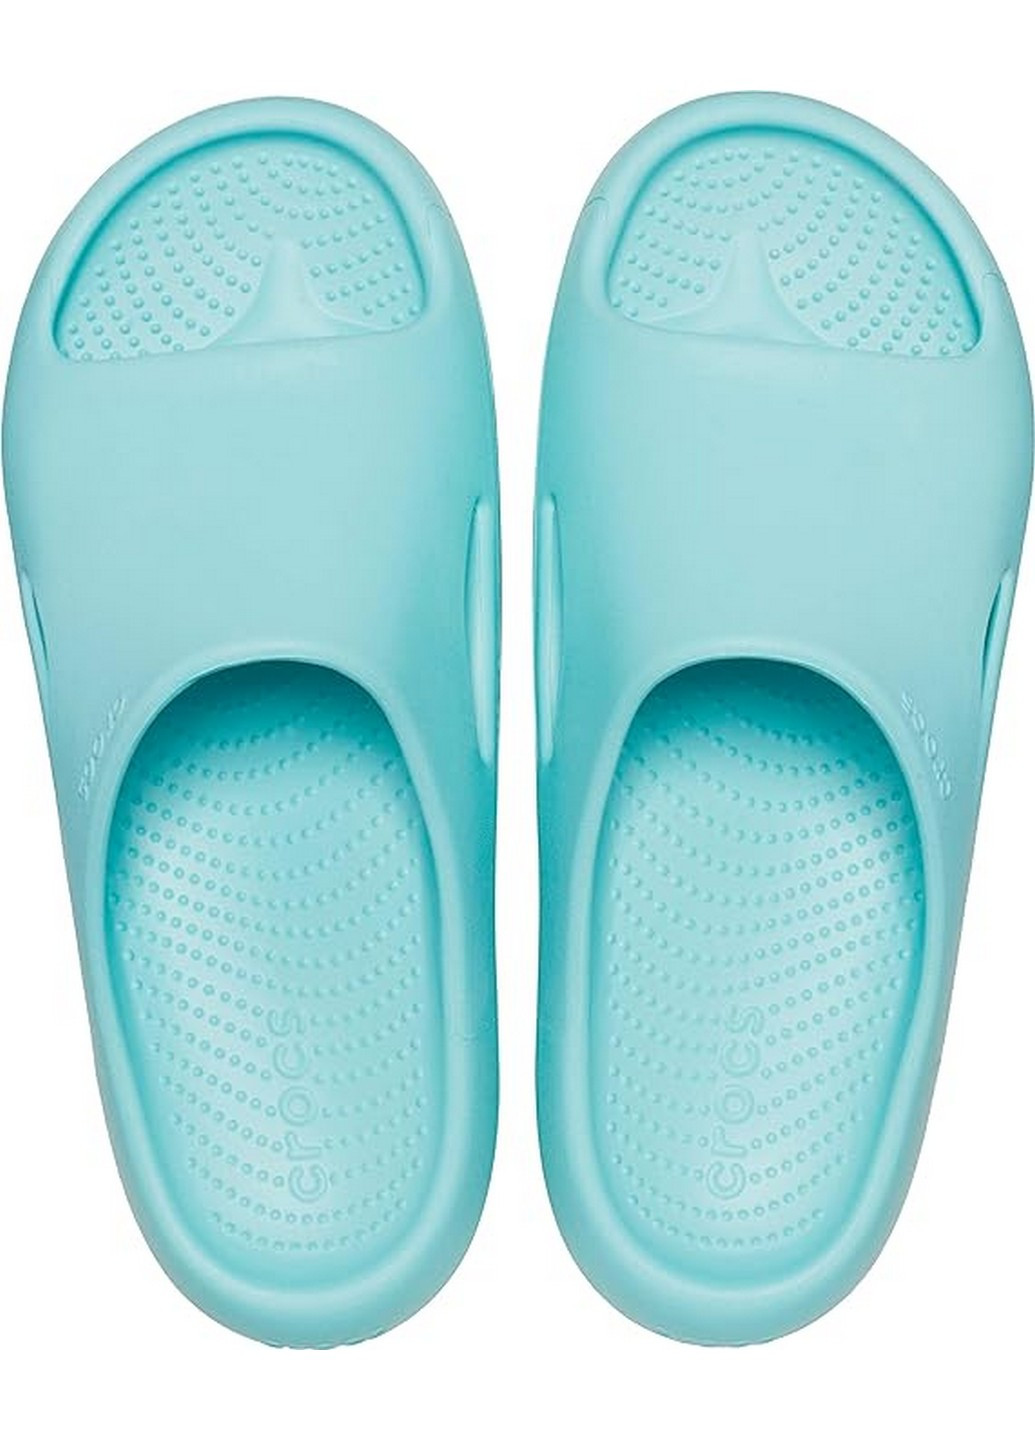 Голубые сабо кроксы Crocs